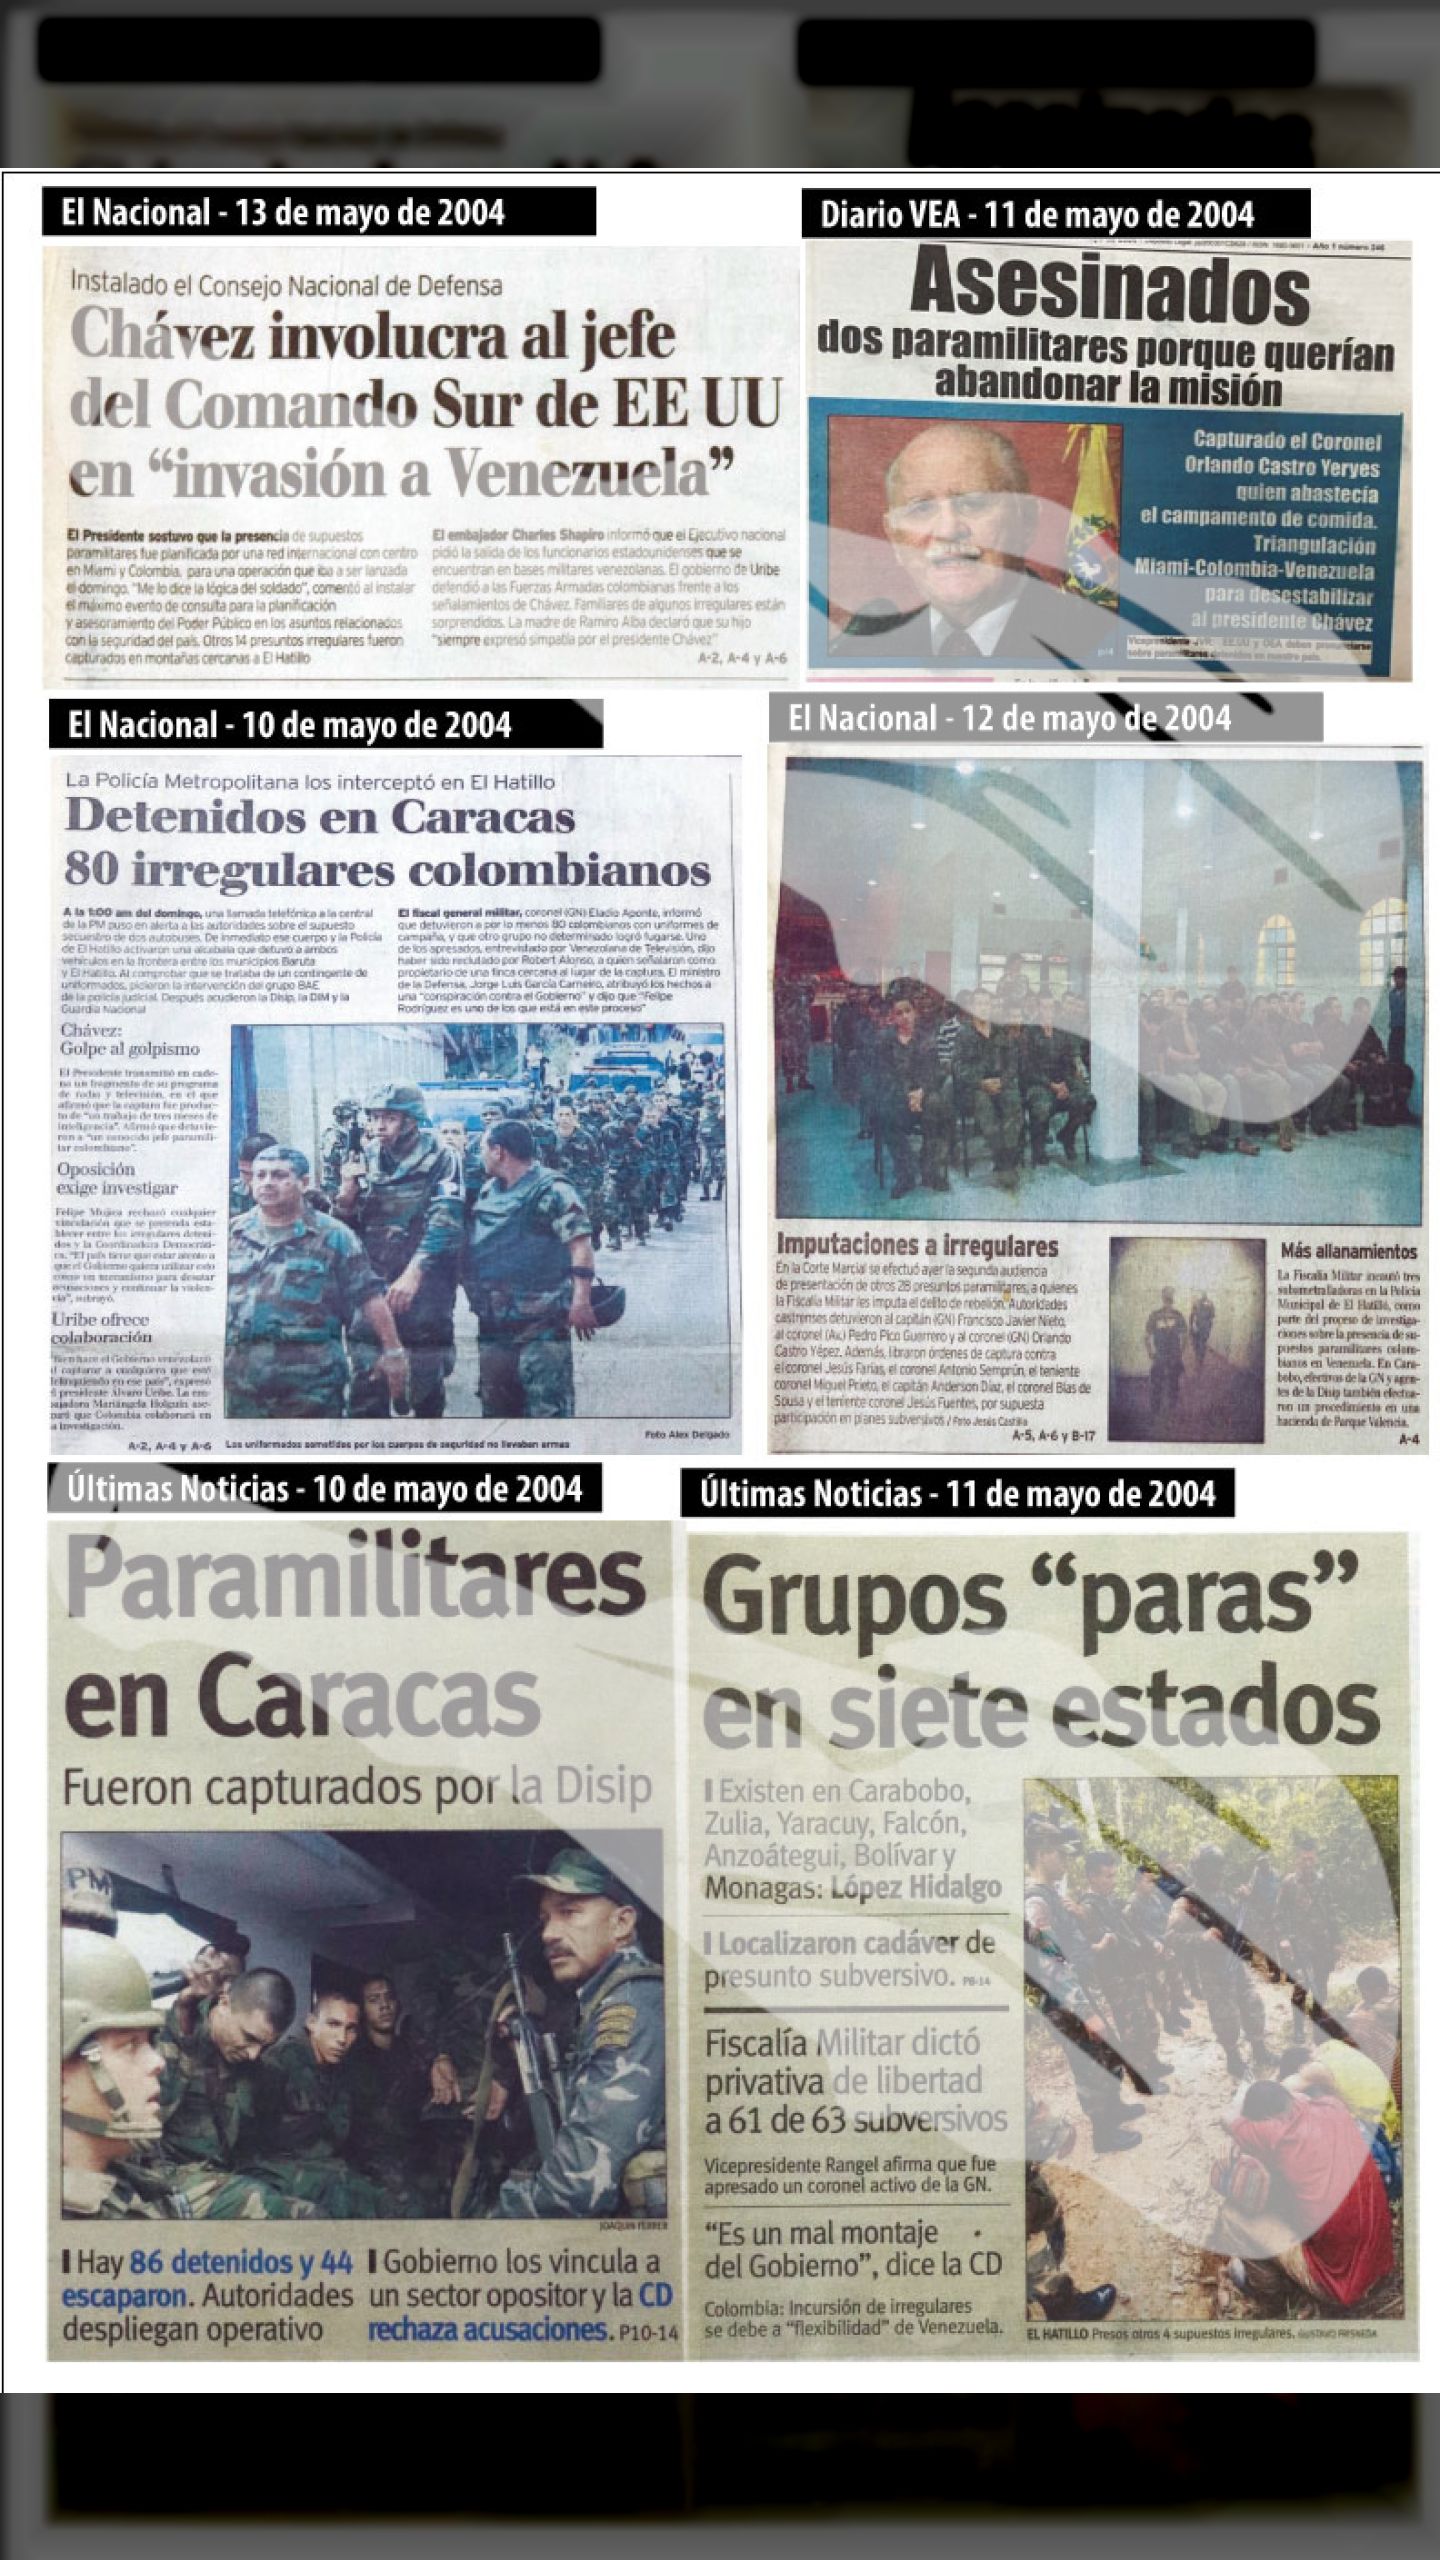 INVASIÓN PARAMILITAR A VENEZUELA “OPERACIÓN DAKTARI” (El Nacional y Últimas Noticias, 9 de mayo 2004)